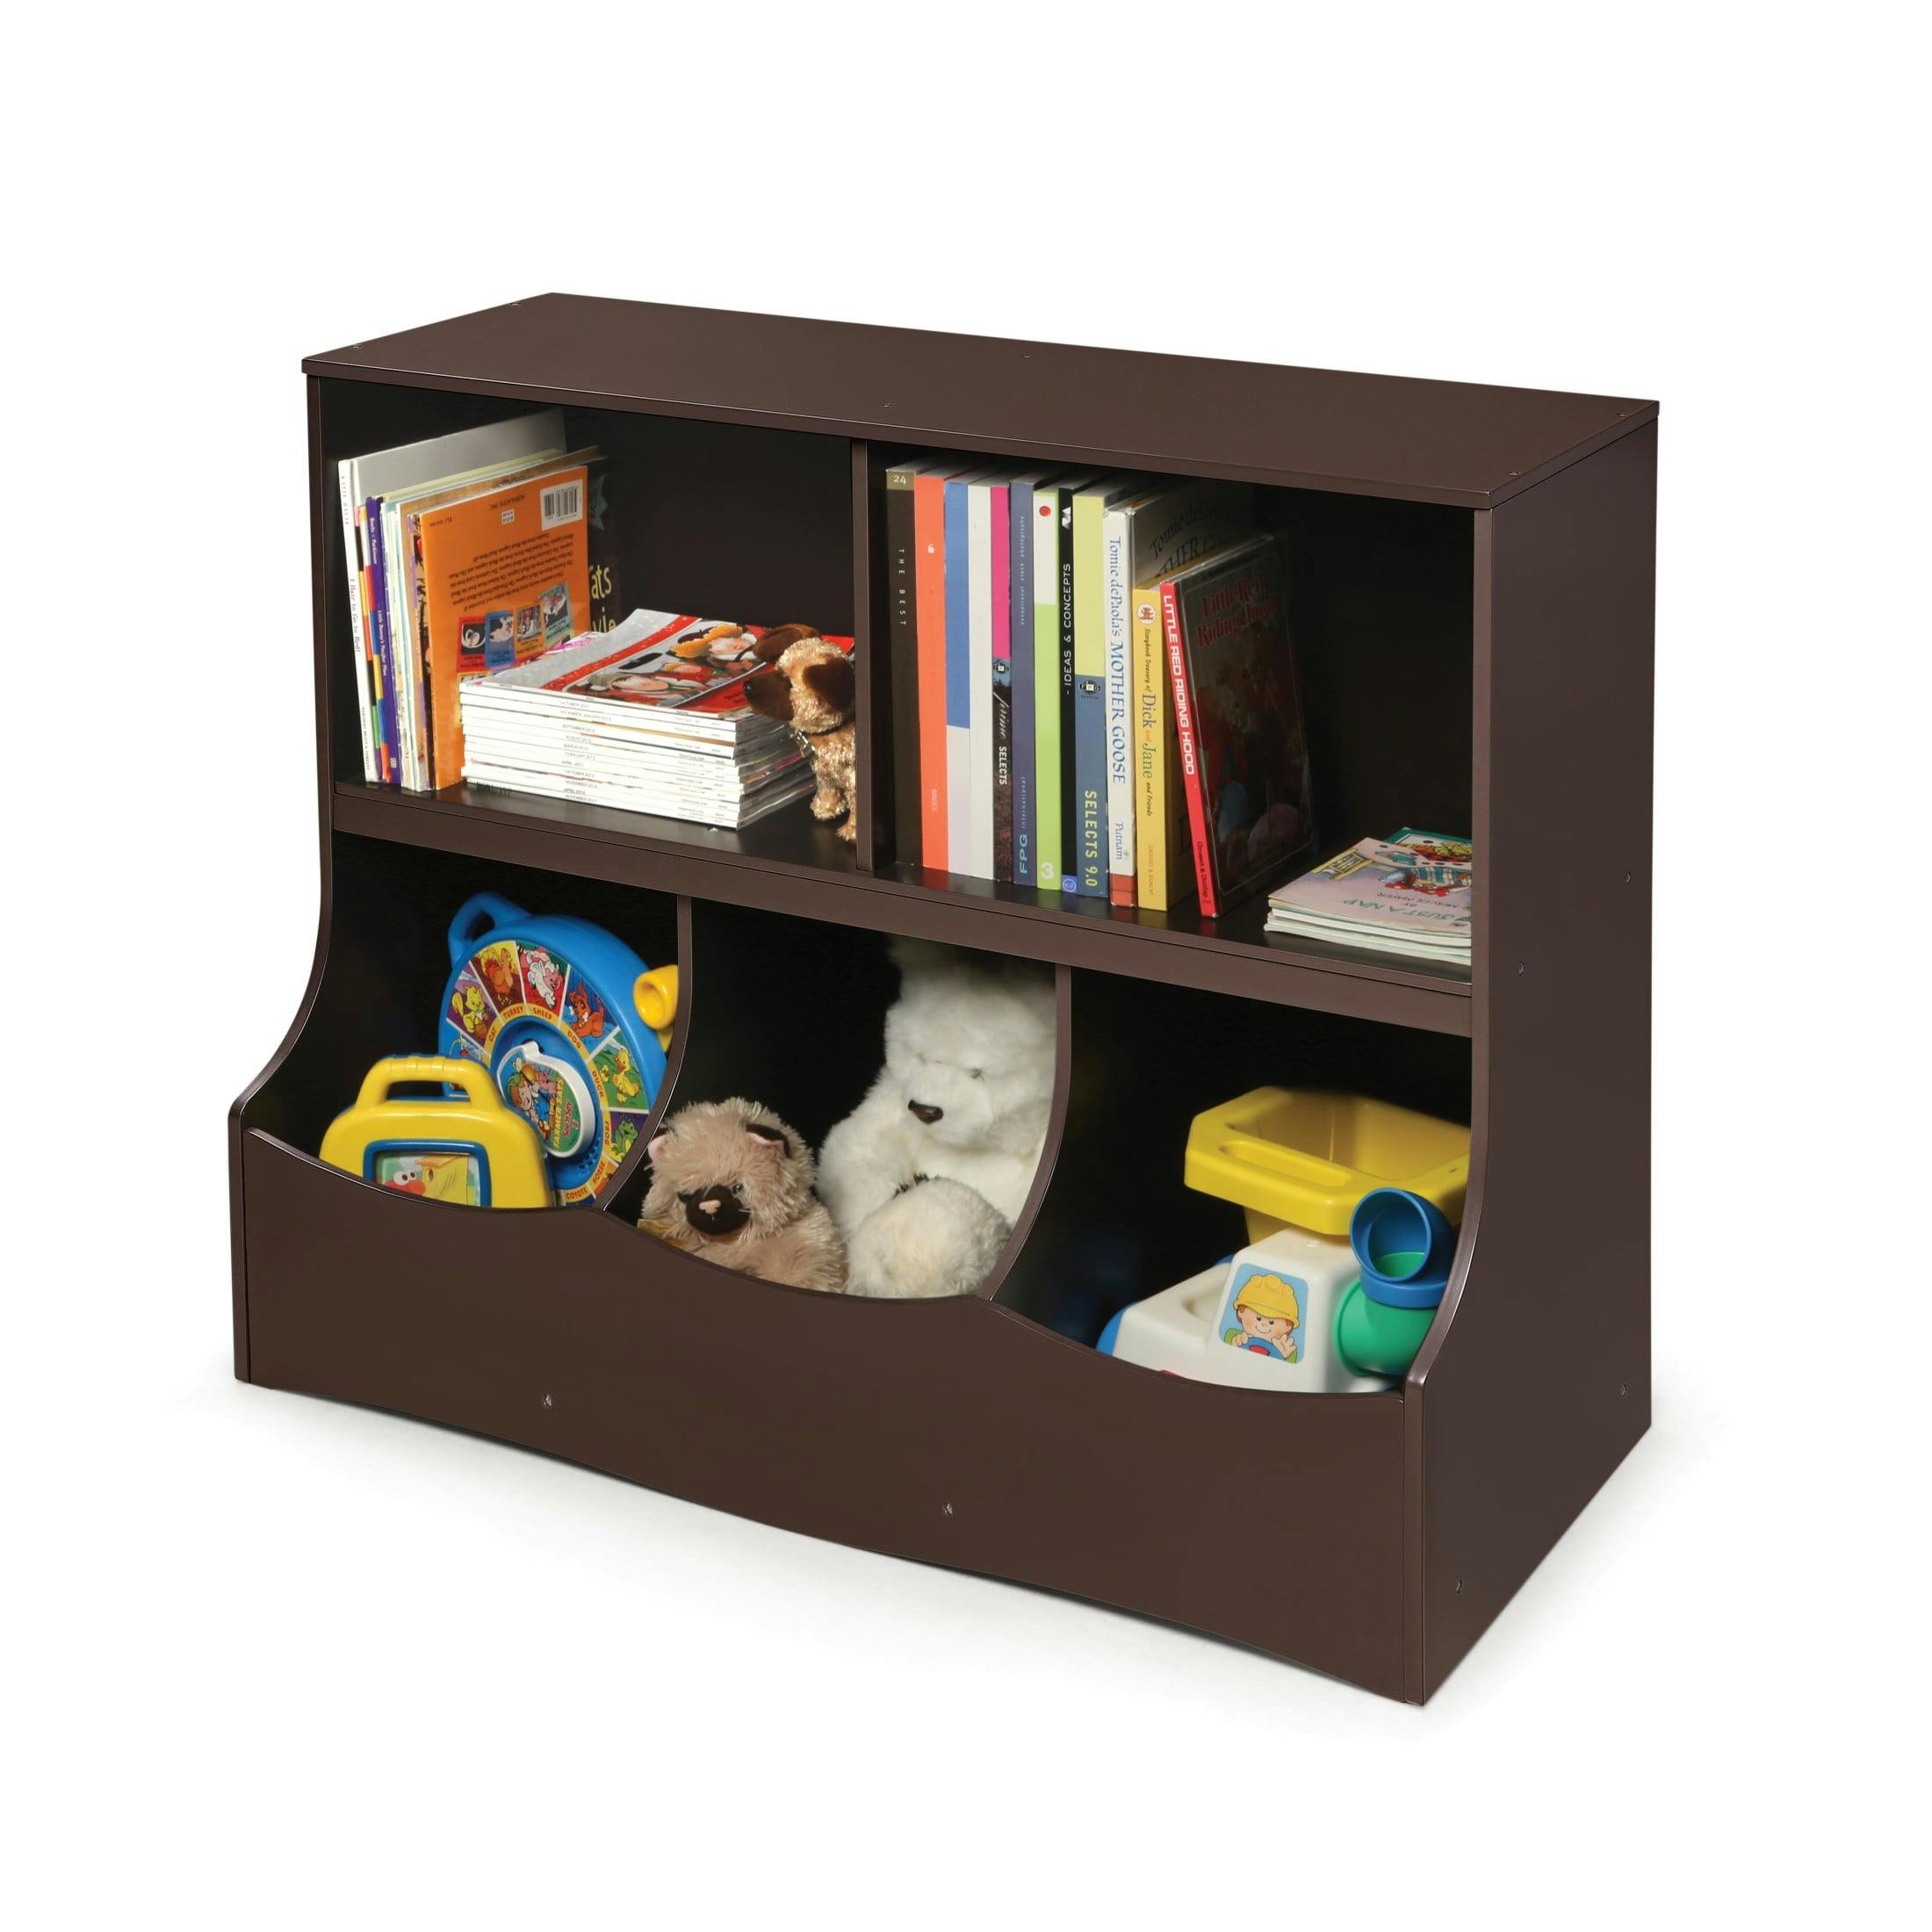 Espresso MDF Kids' Multi-Bin Storage Cubby with Open Shelves